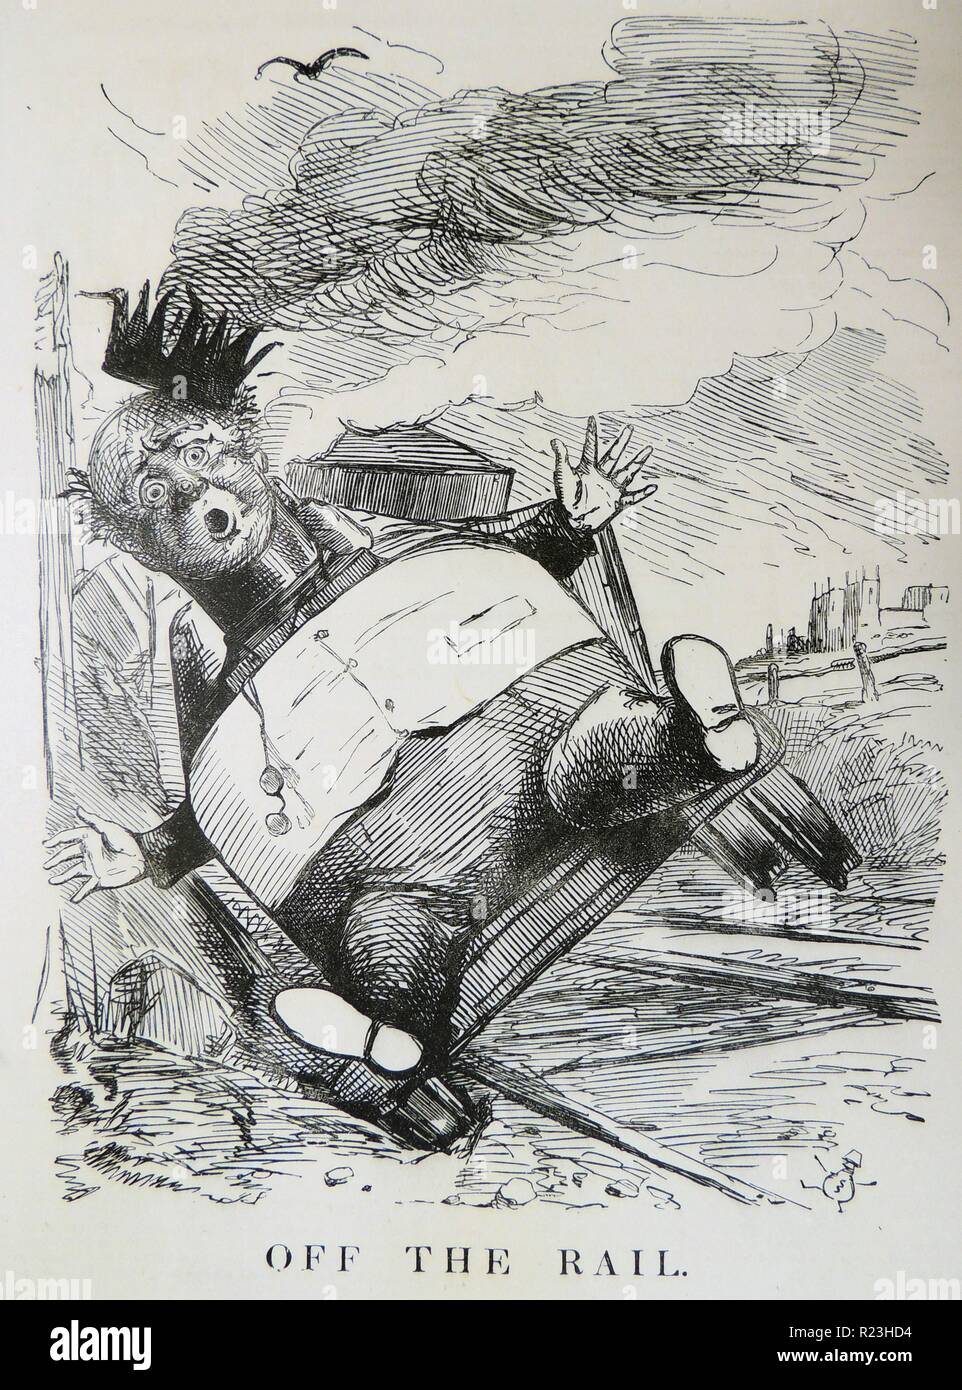 George Hudson (1800-1871) Le Roi de fer. L'anglais financier et promoteur de chemins de fer. Sa carrière prend fin en disgrâce lorsque la corruption et la fraude ont été divulgués. Caricature de ''punch'', Londres, 1849. Banque D'Images